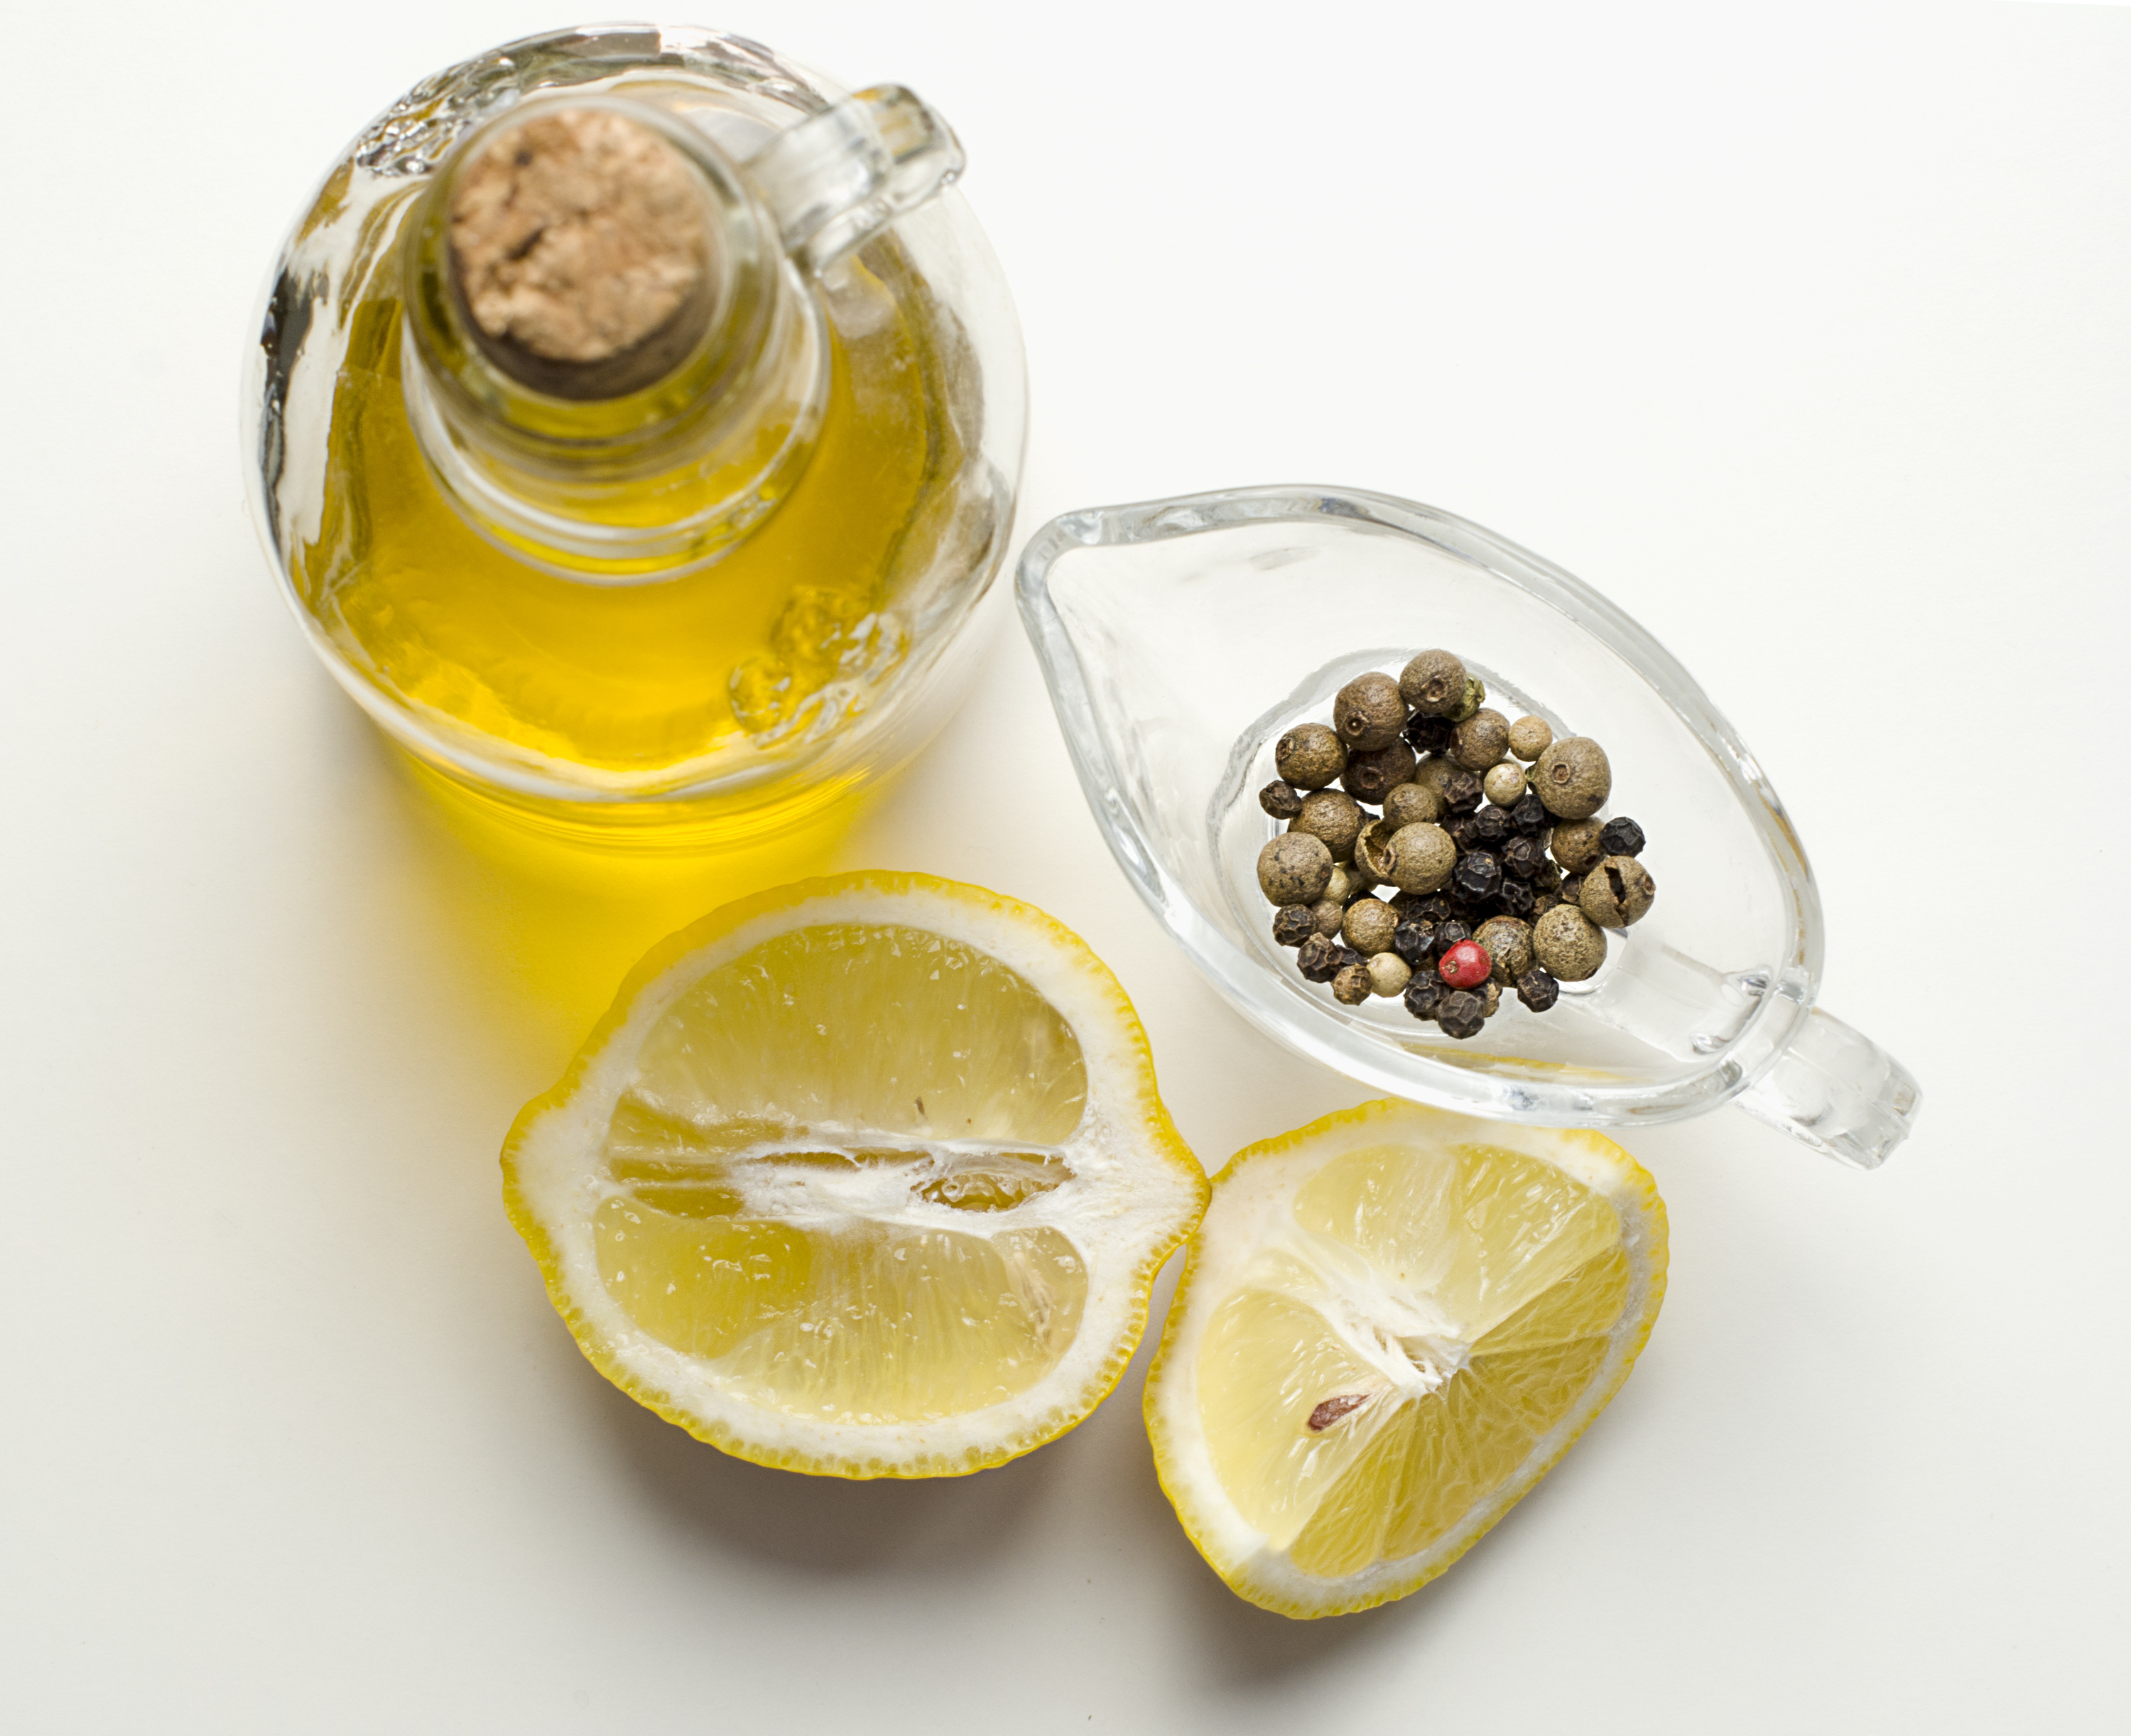 how to dissolve kidney stones with lemon juice